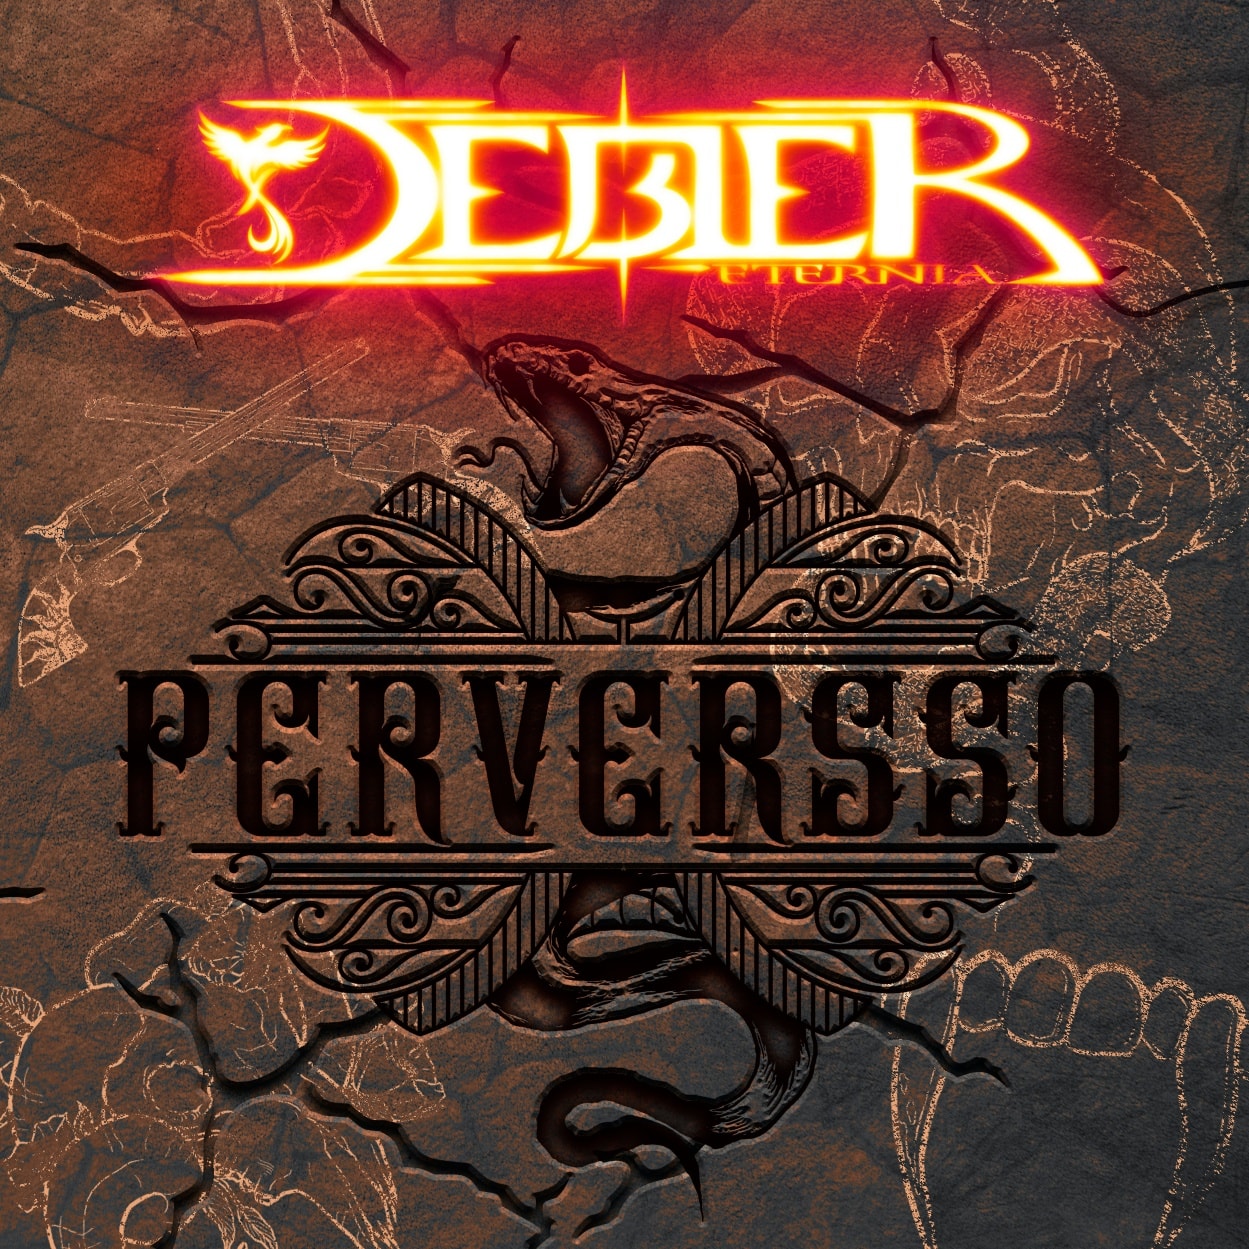 [Reseña] “Bienvenidos al bar “Perversso” con el nuevo disco de Debler Eternia